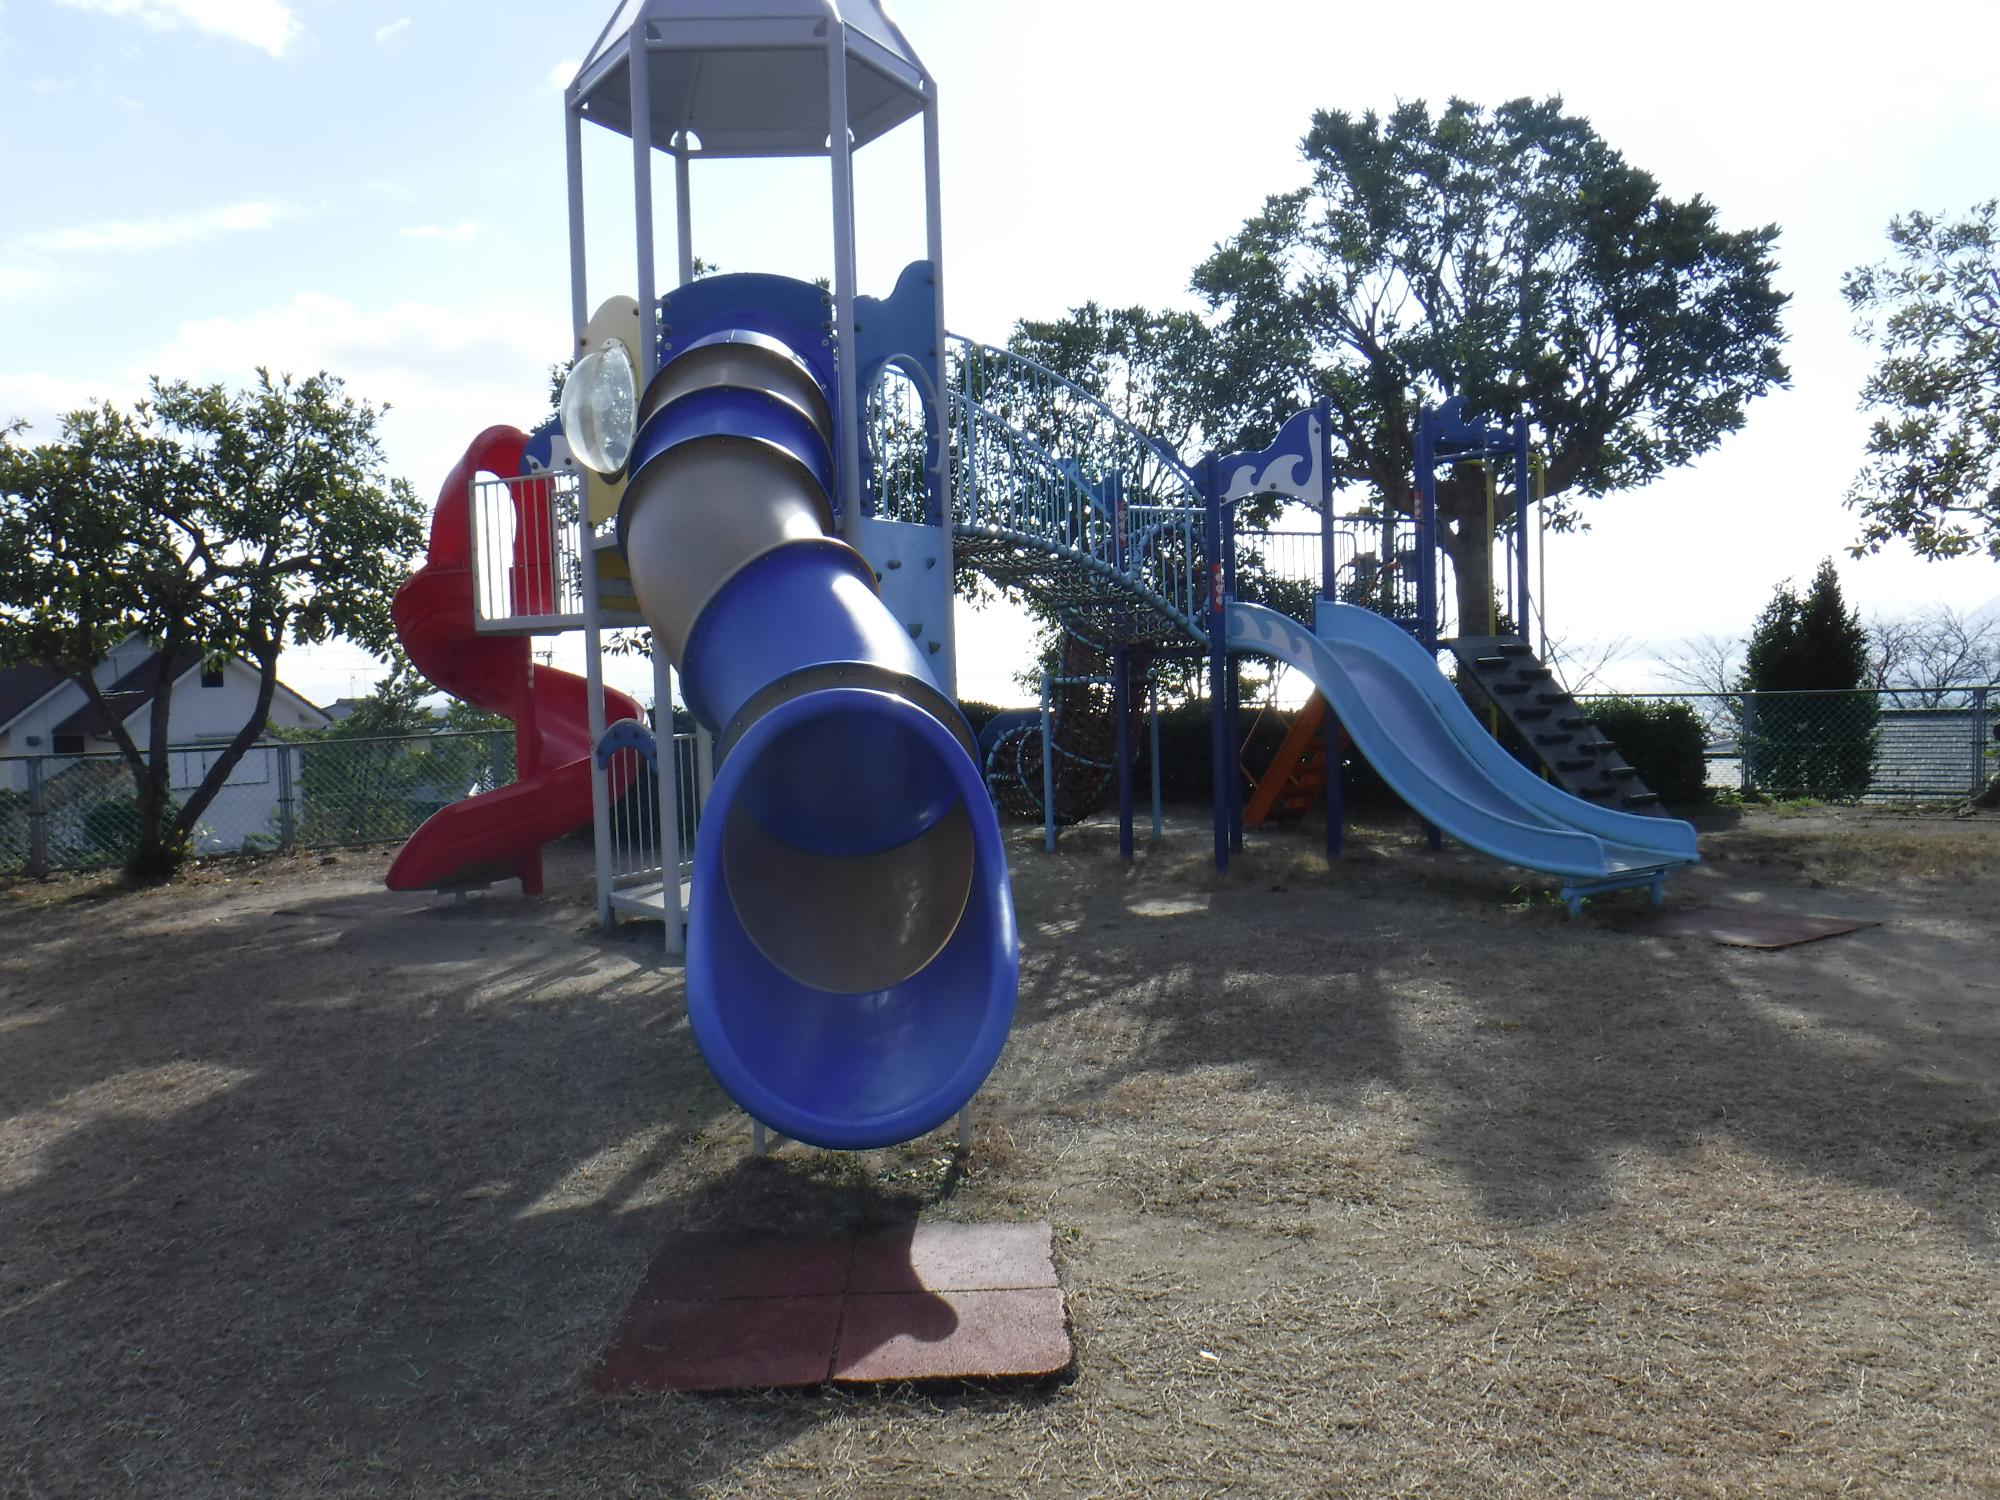 赤い螺旋状の滑り台や青とグレー交互に塗られたトンネル状の滑り台や通常の滑り台がついた複合遊具の写真